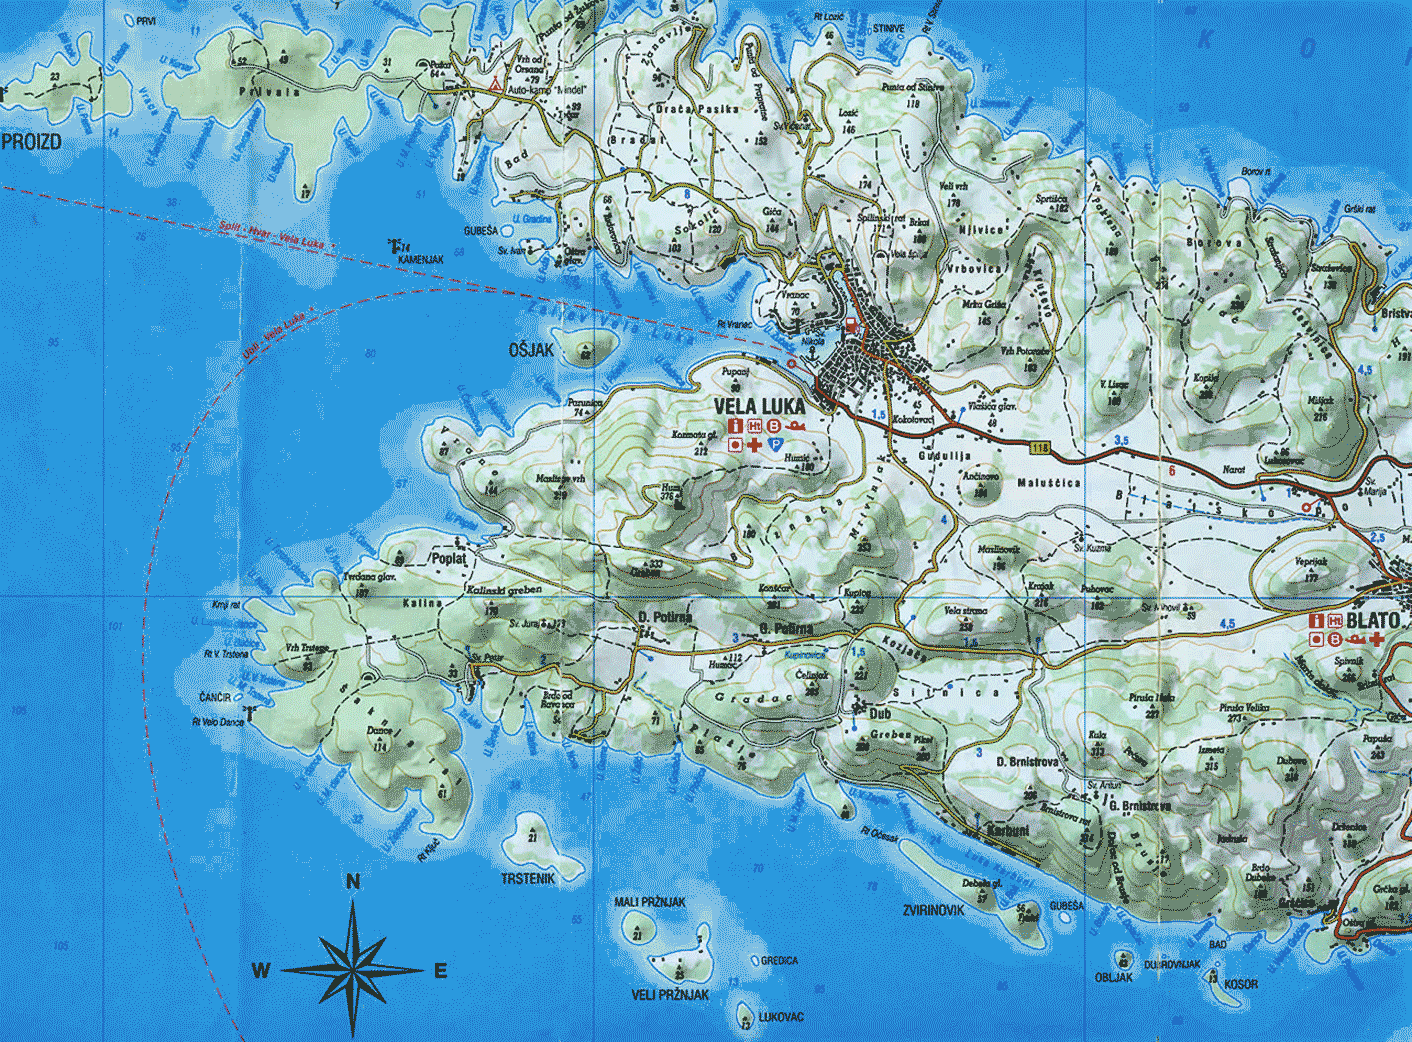 Korcula Island Map: Map of Vela Luka, Osjak, Karbuni and Proizd